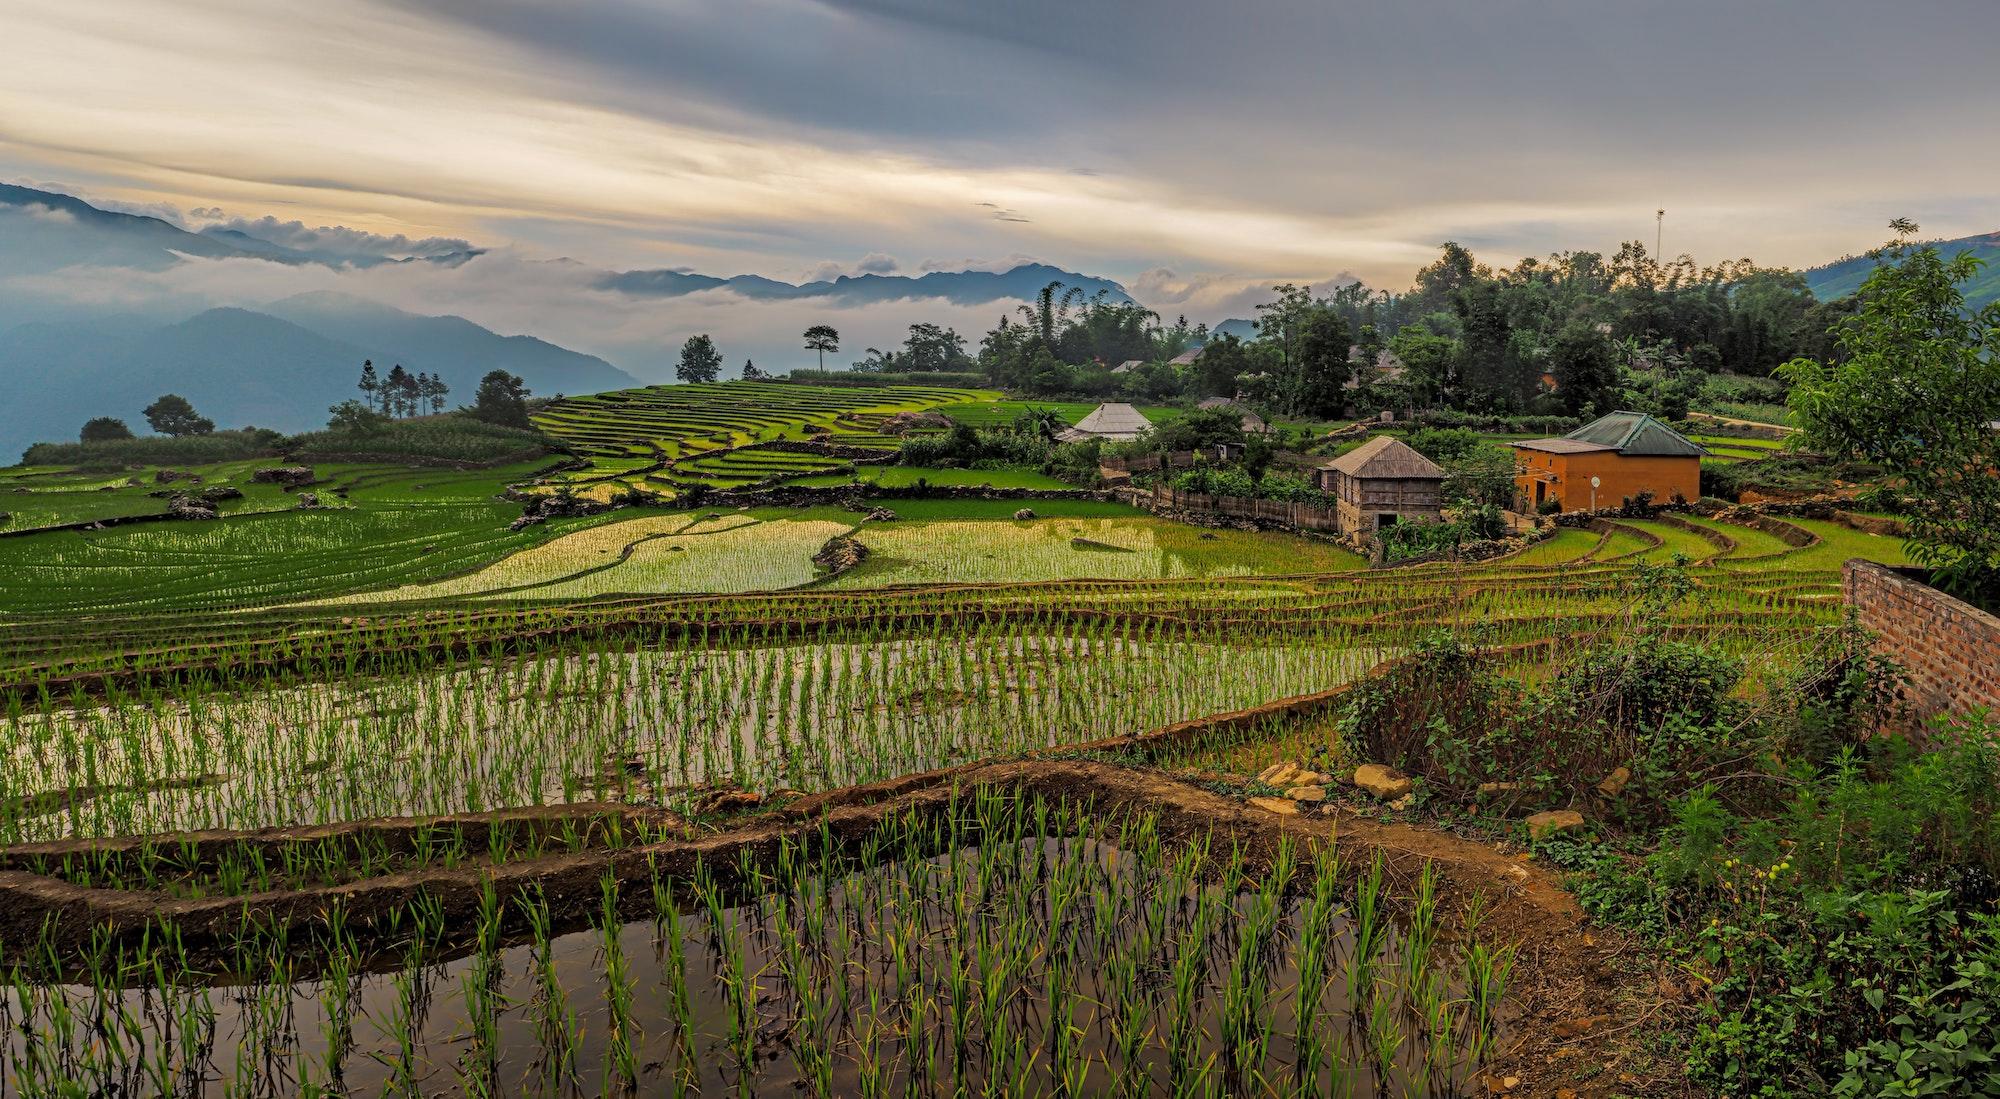 Scenery of rice fields in Vietnam